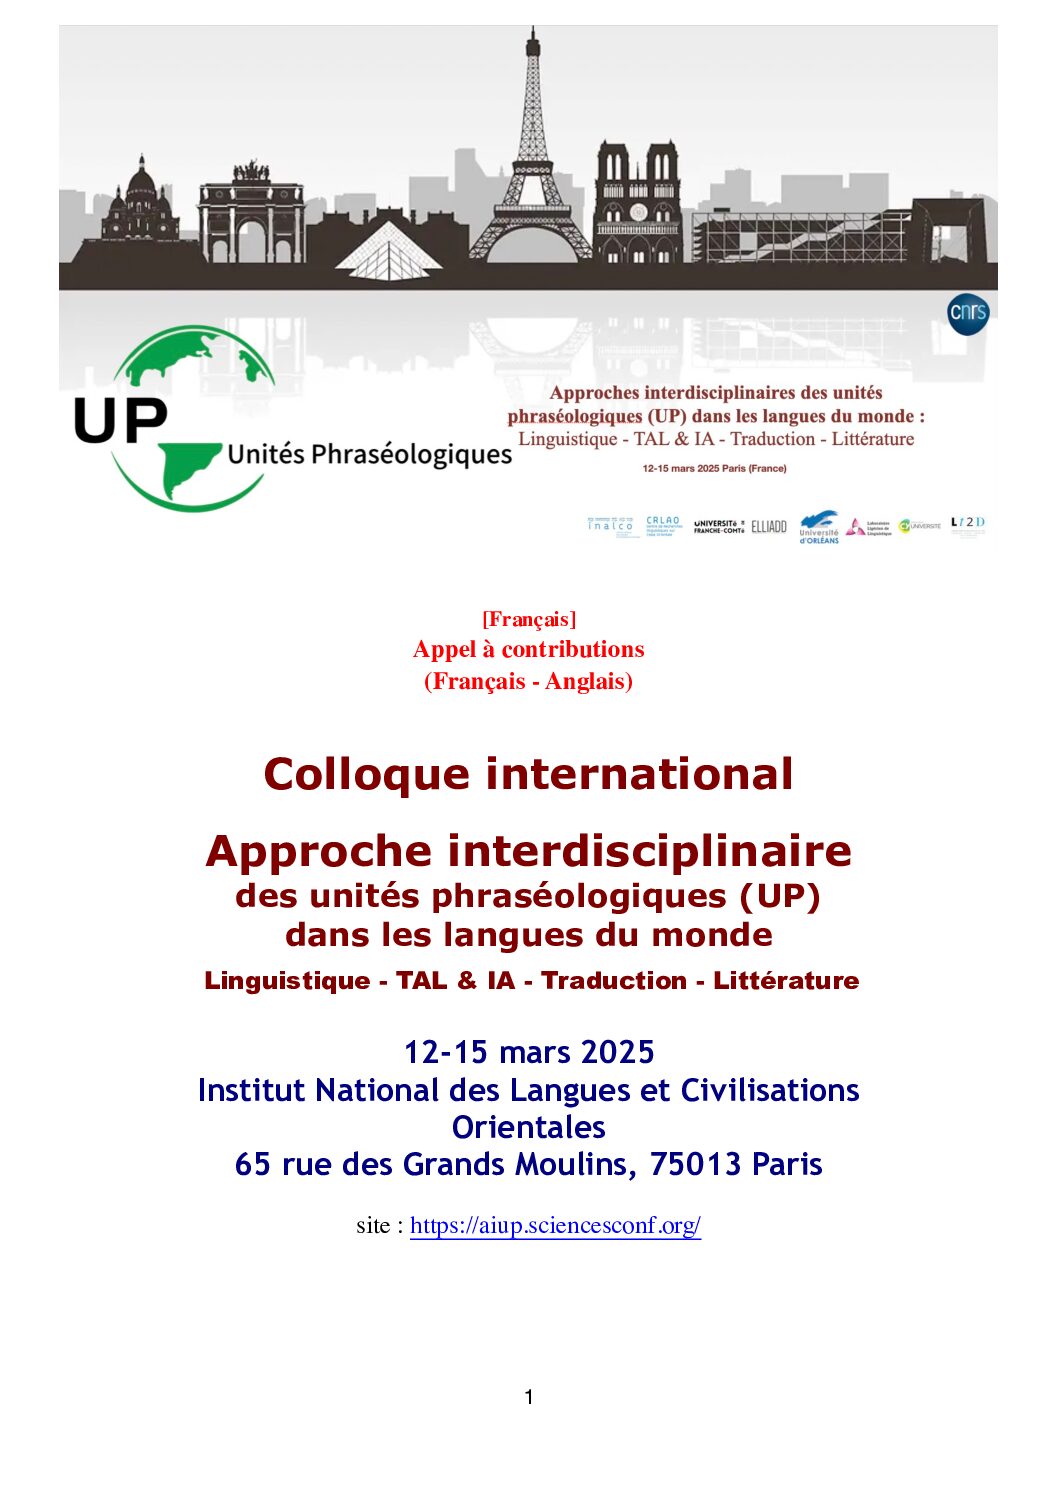 Colloque international : Approche interdisciplinaire des unités phraséologiques (UP) dans les langues du monde